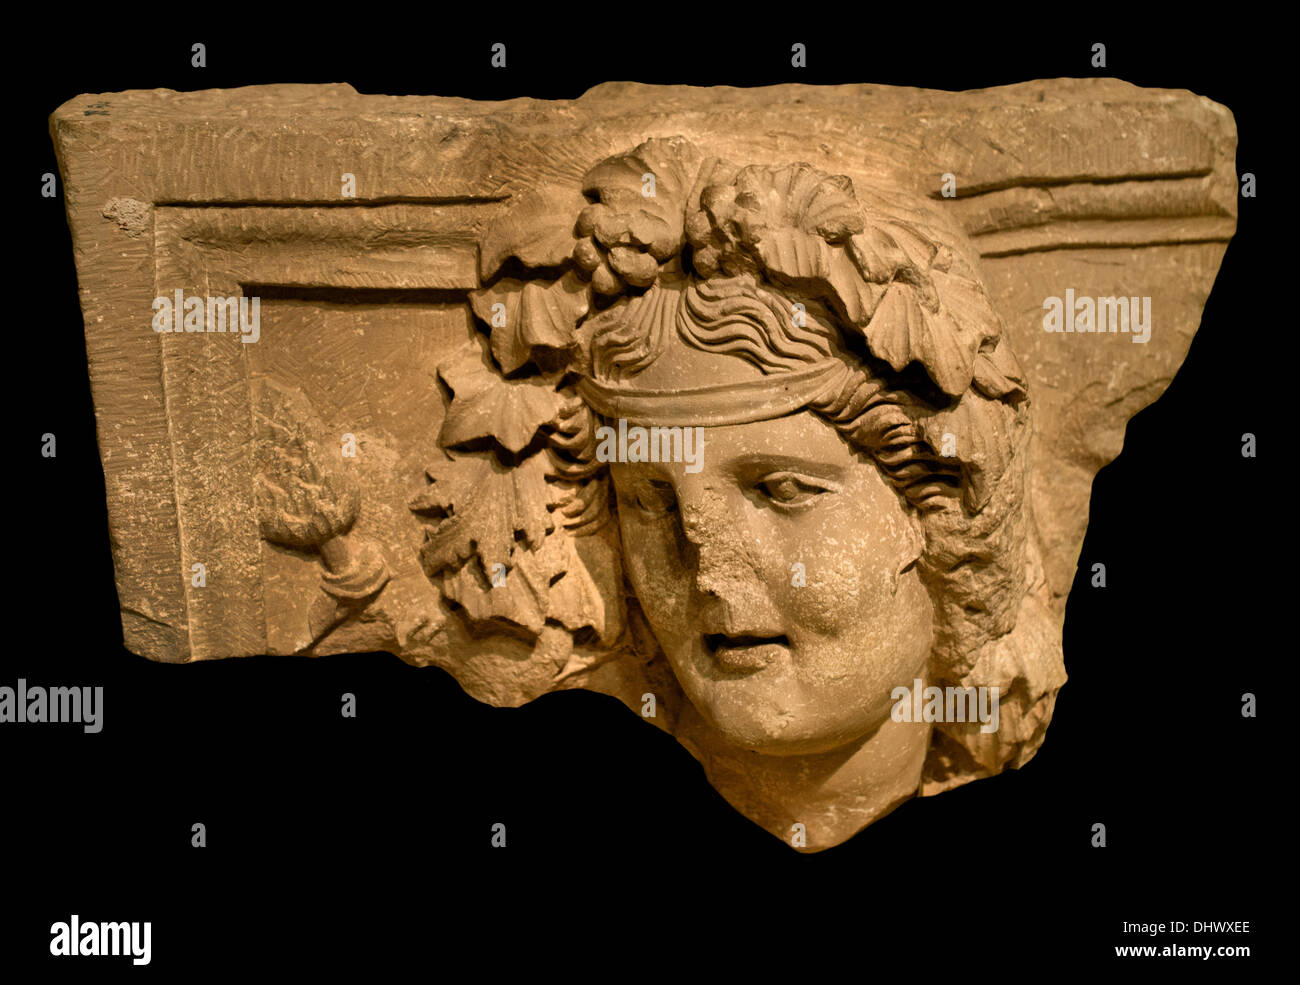 Petra storico e archeologico della città Giordano Giordano famoso per la sua roccia architettura di taglio Foto Stock